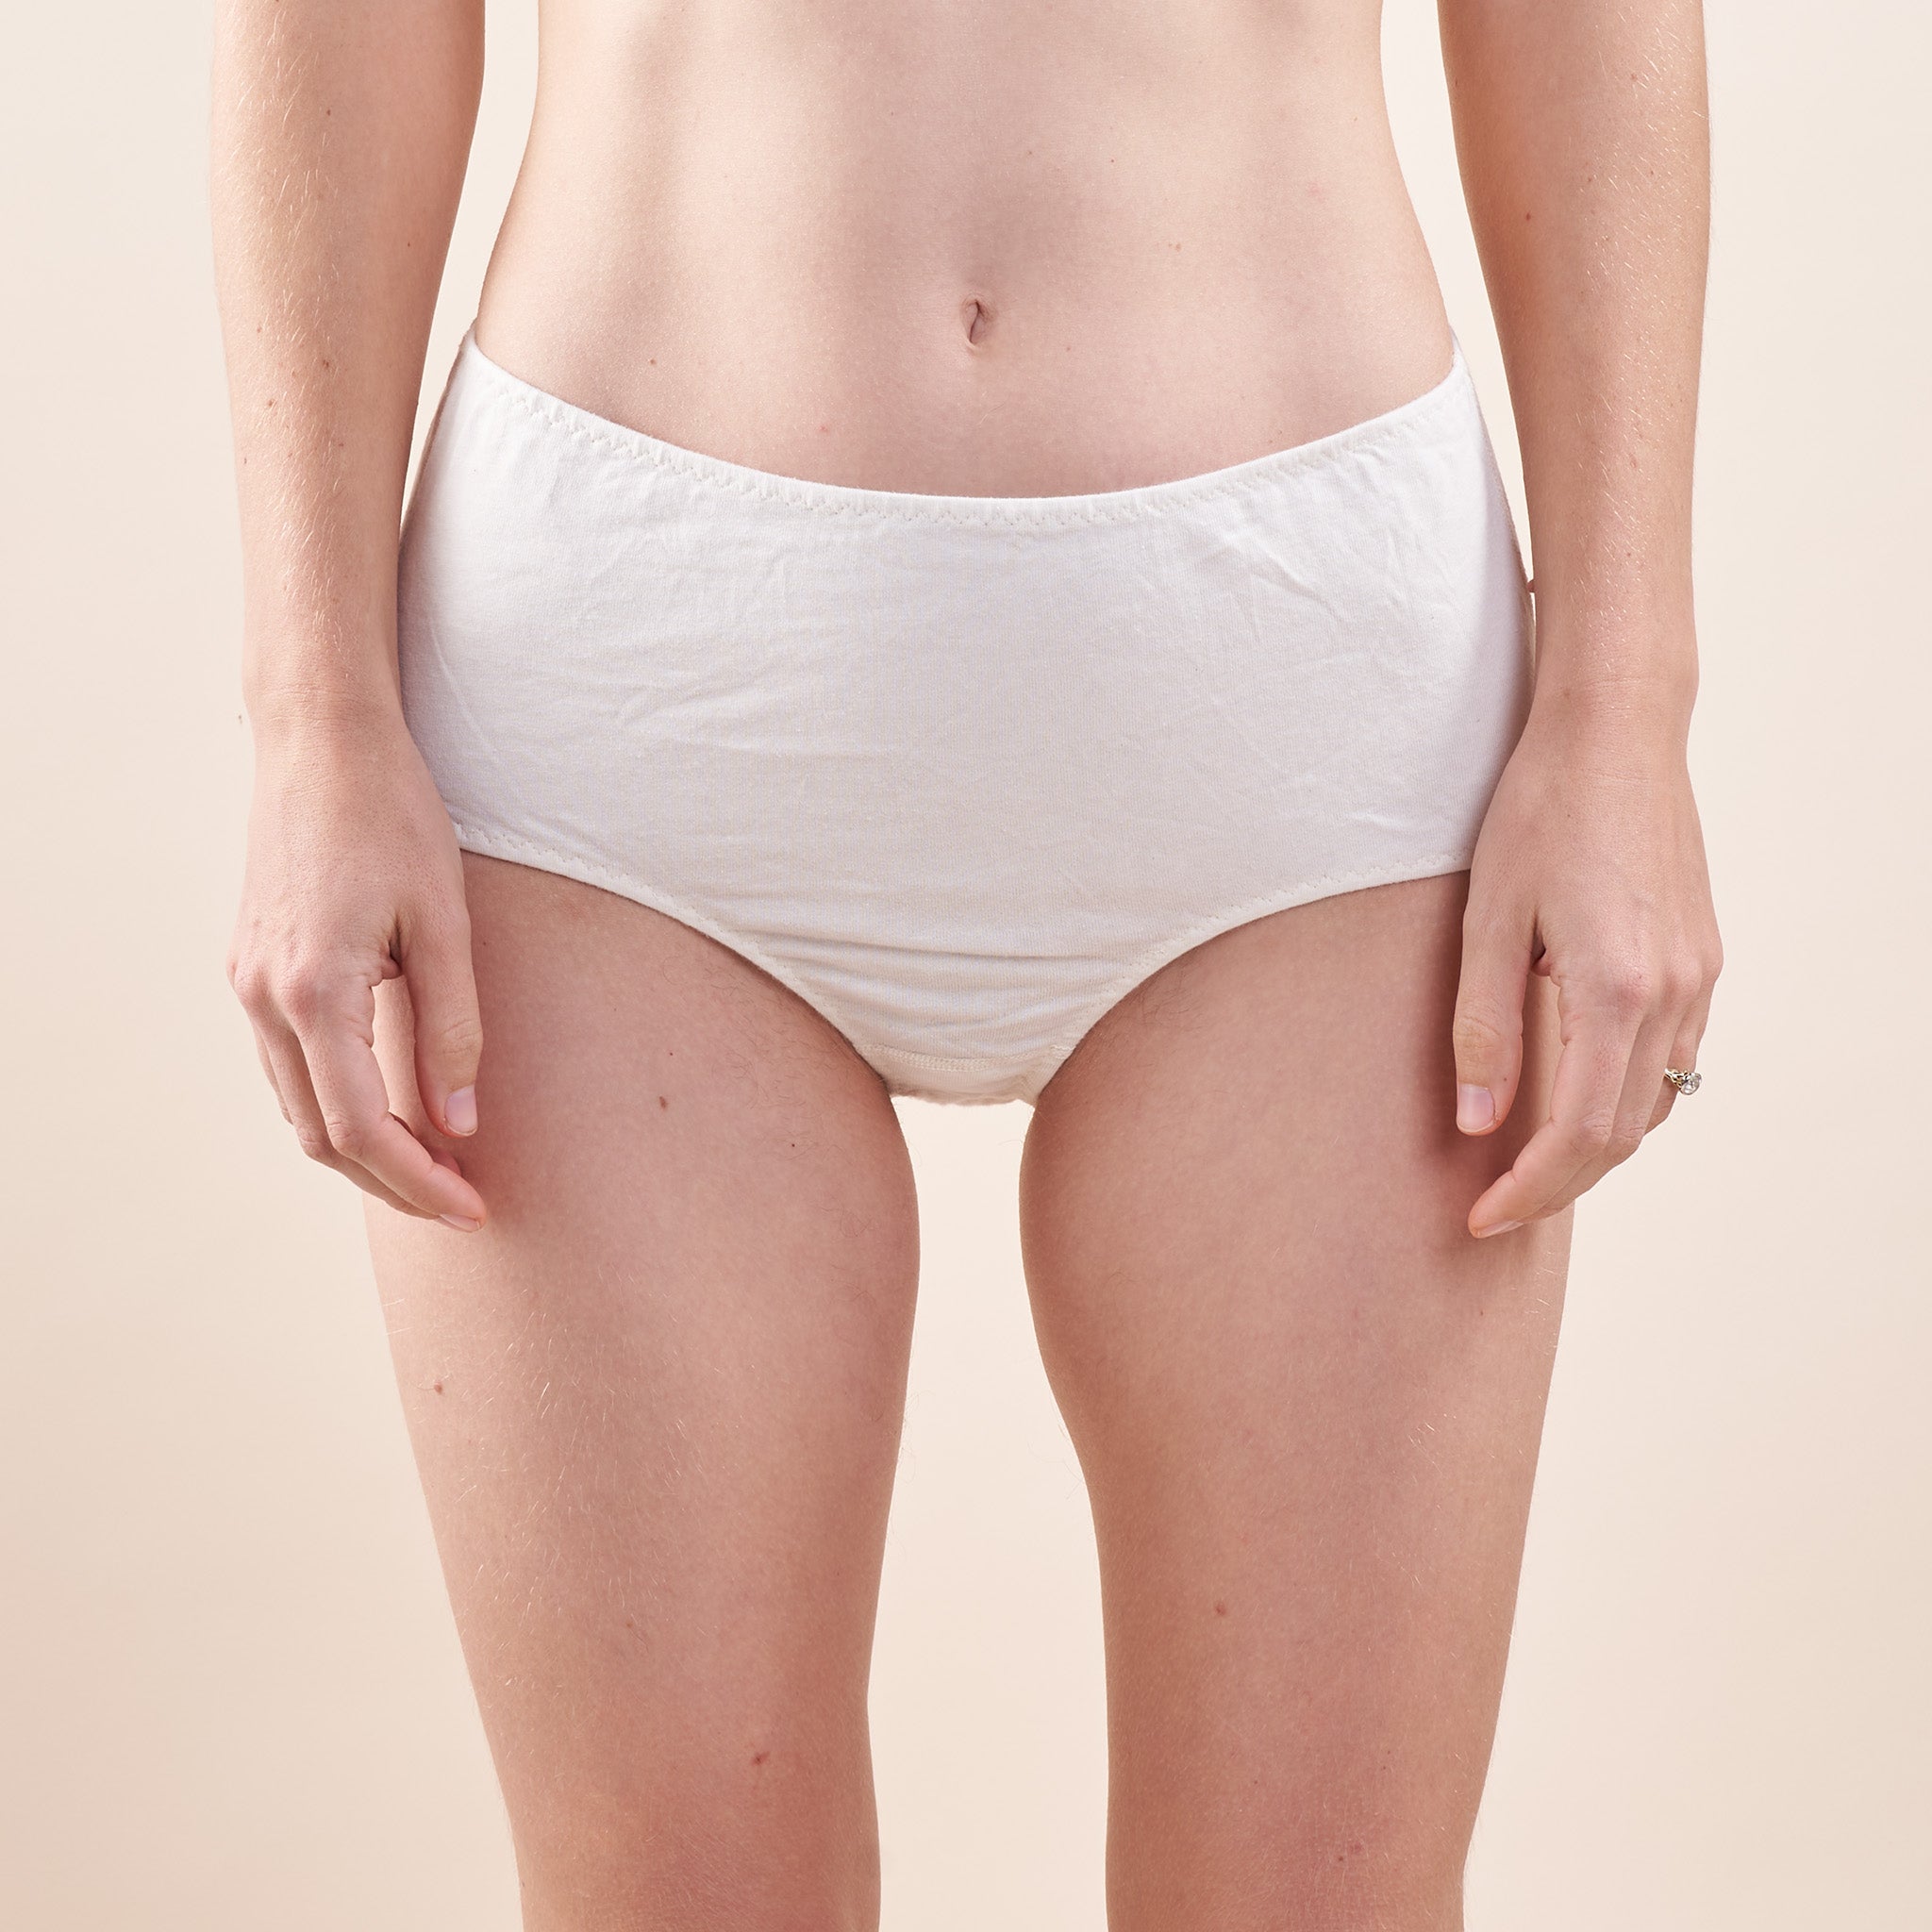 Women's 100% Cotton Underwear - Organic Cotton Underwear & Panties